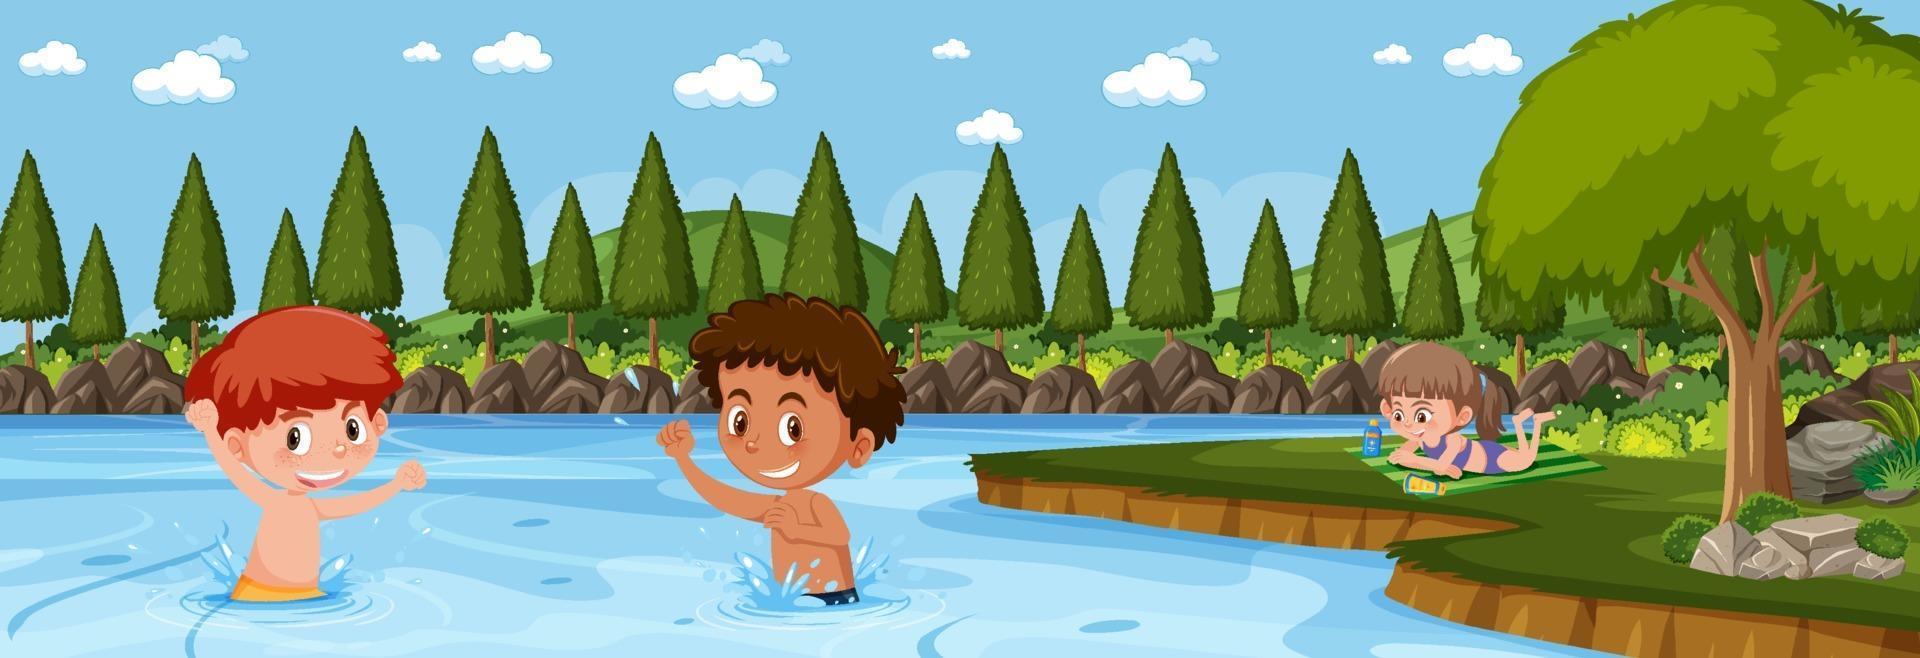 panorama de paisagem com muitas crianças nadando no lago vetor